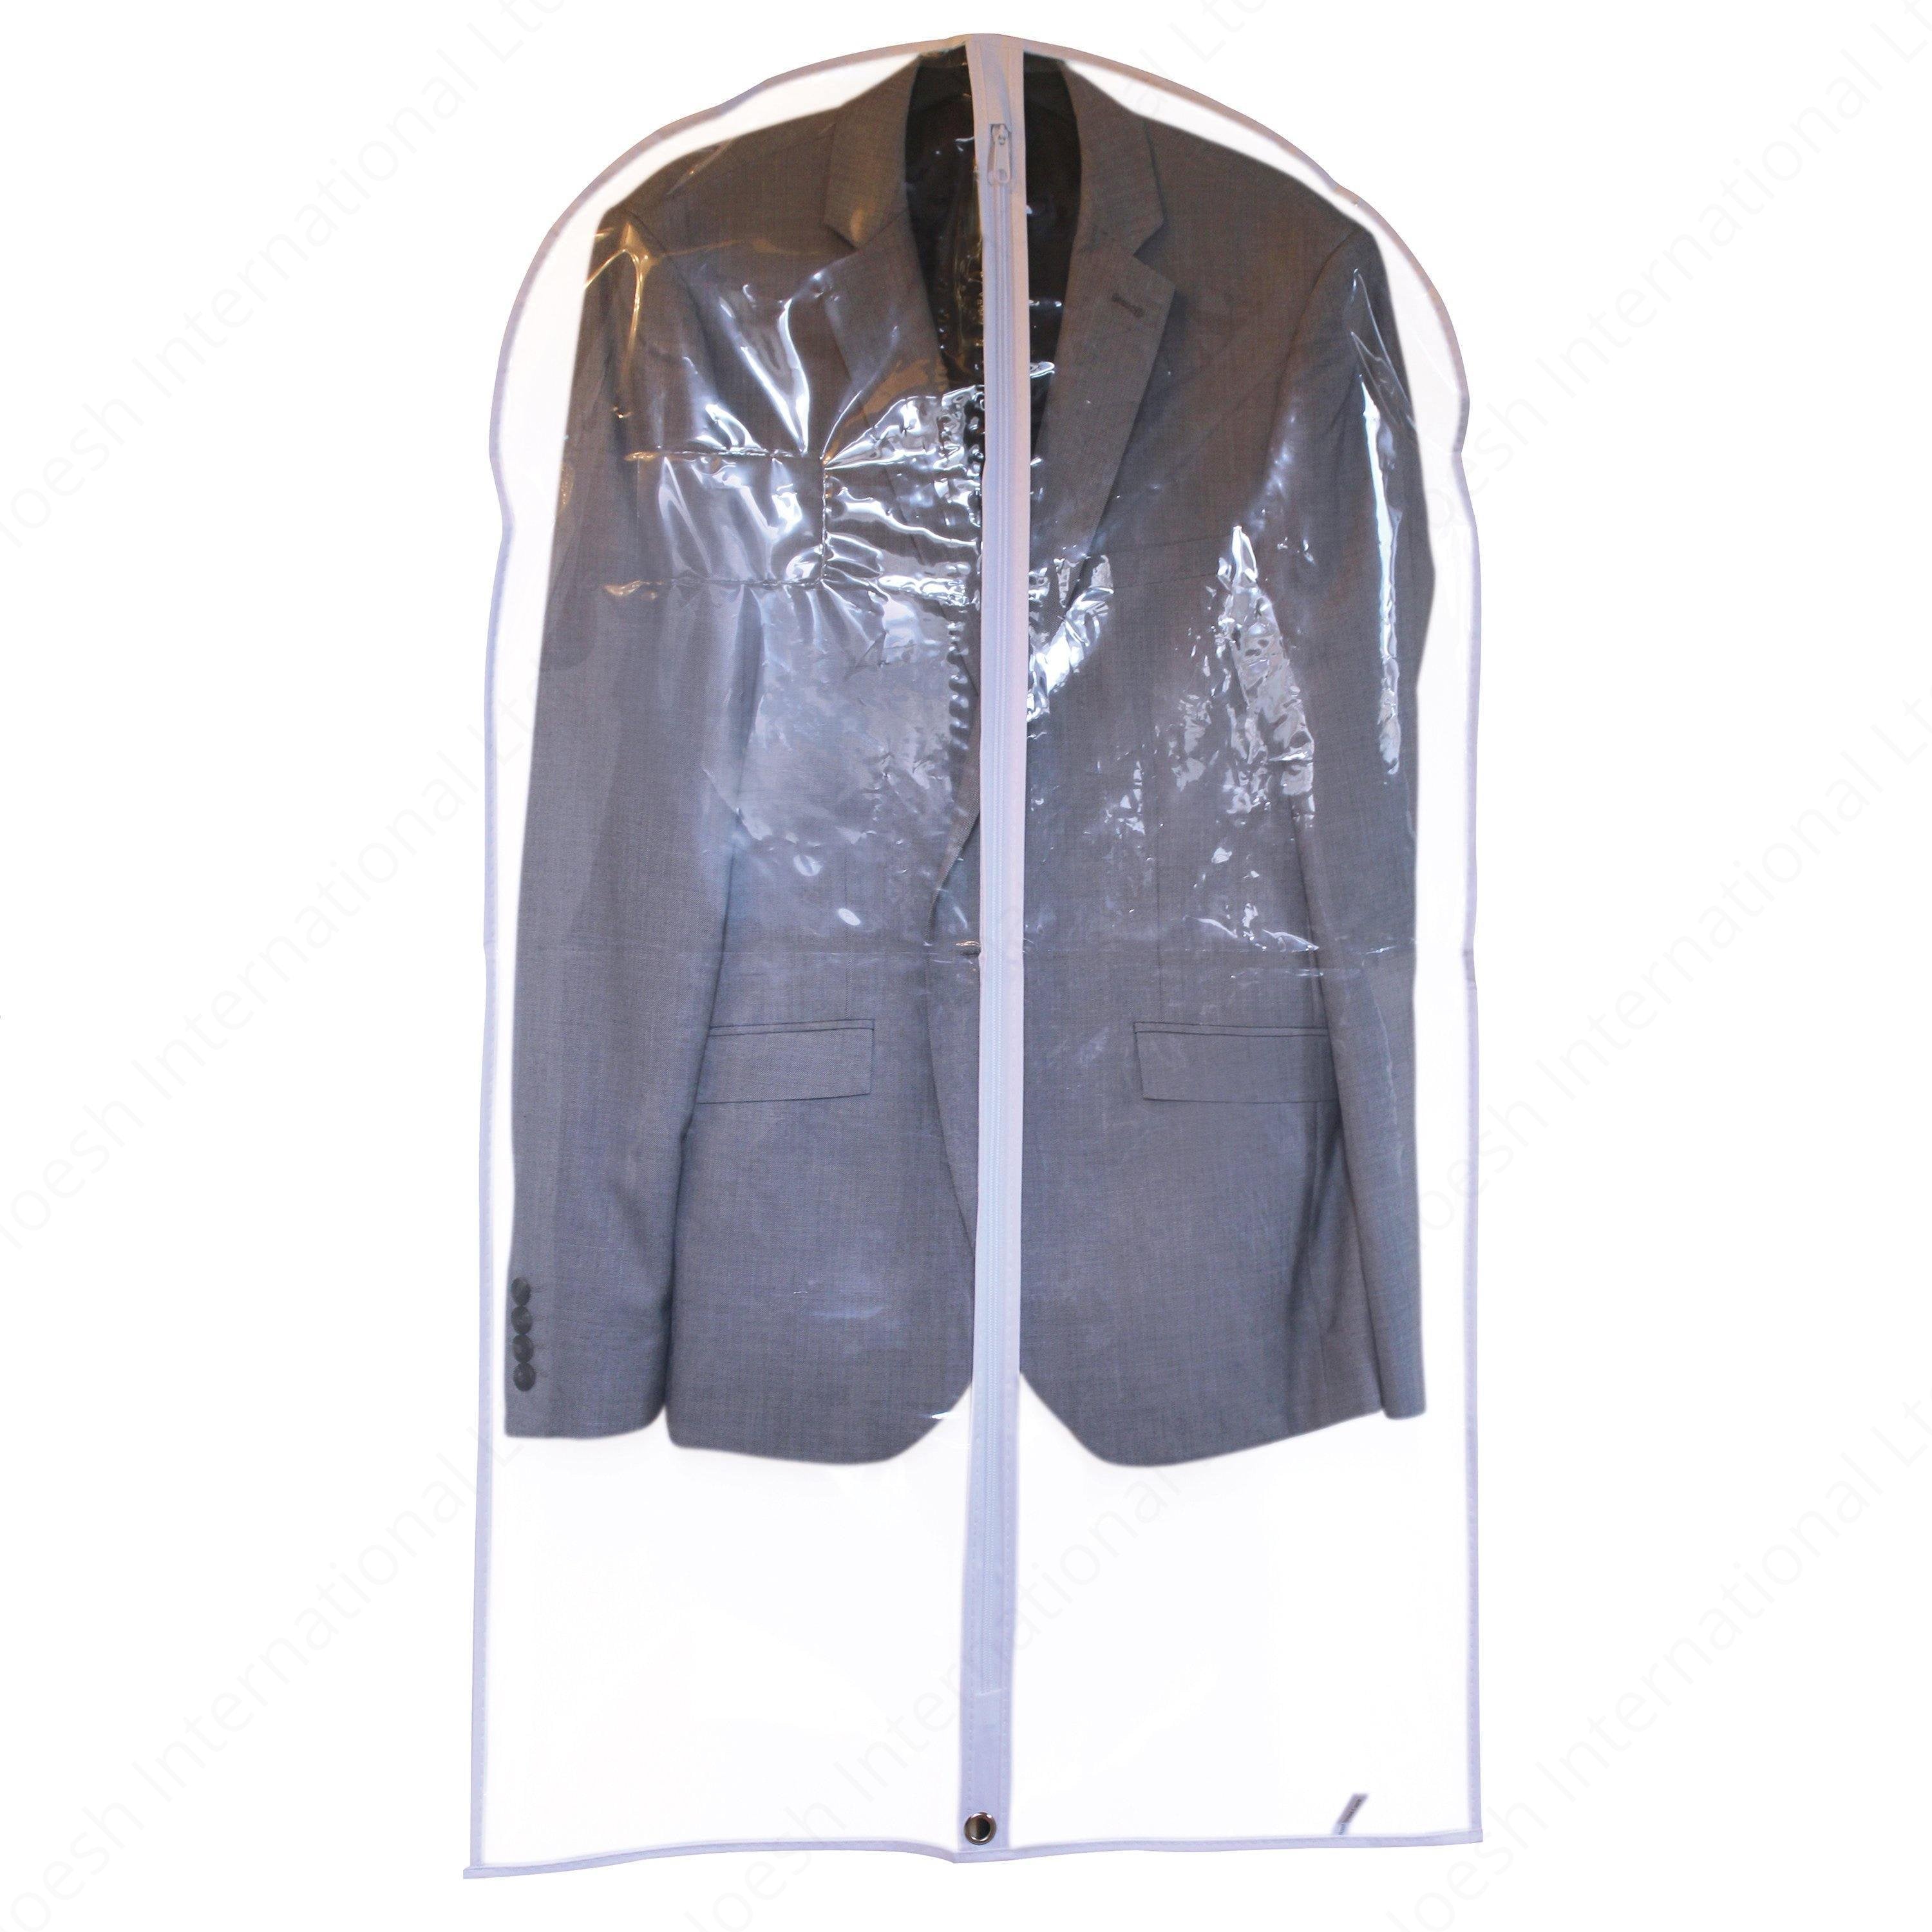 40” Waterproof / Breathable Mens Suit Covers - Hoesh International Ltd